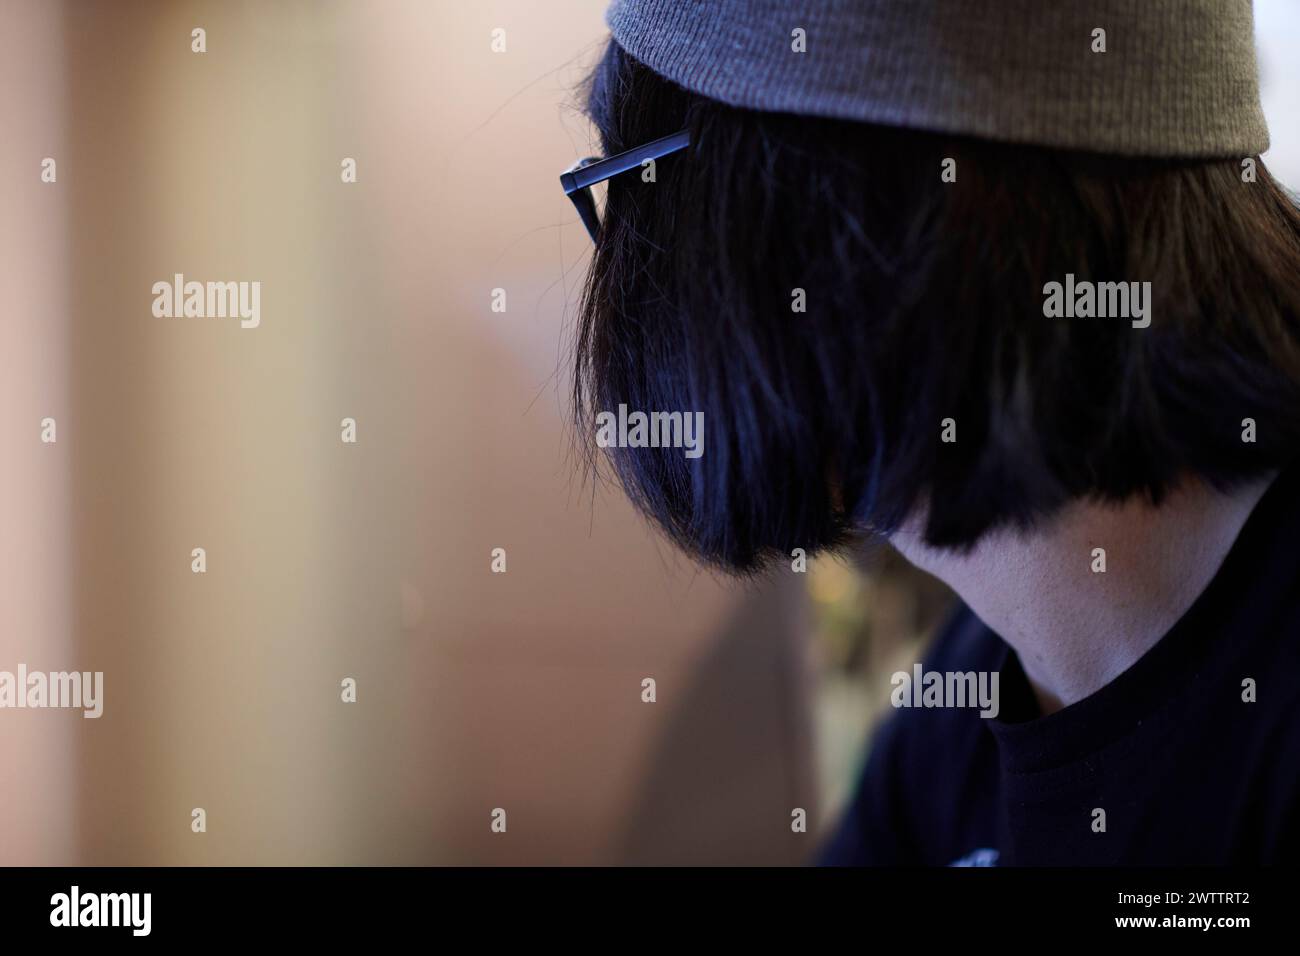 Profilo laterale di una persona che indossa un cappello e occhiali Foto Stock